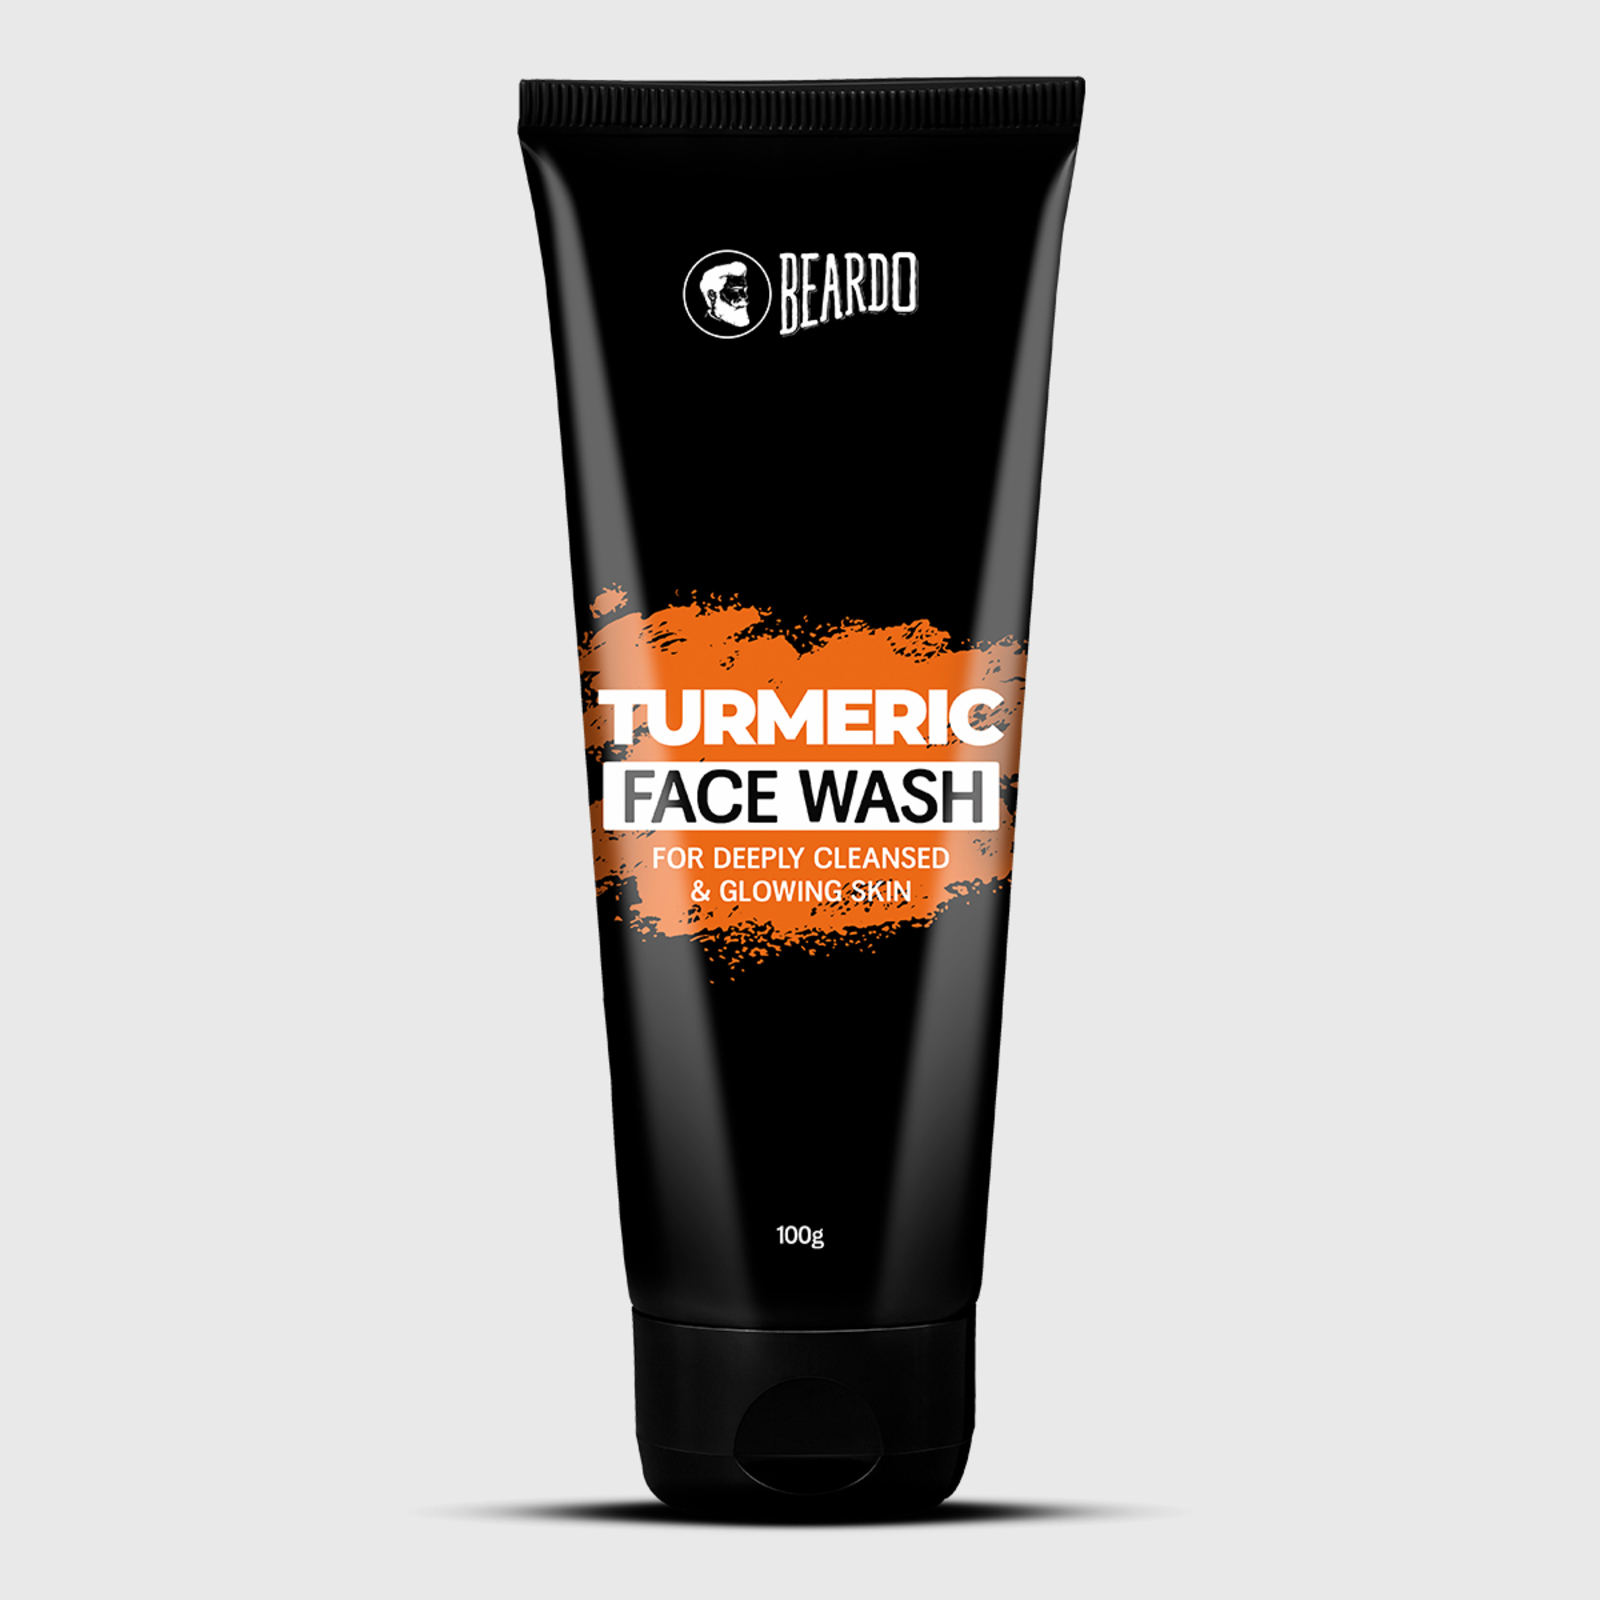 Beardo Turmeric Facewash for Men coupon code